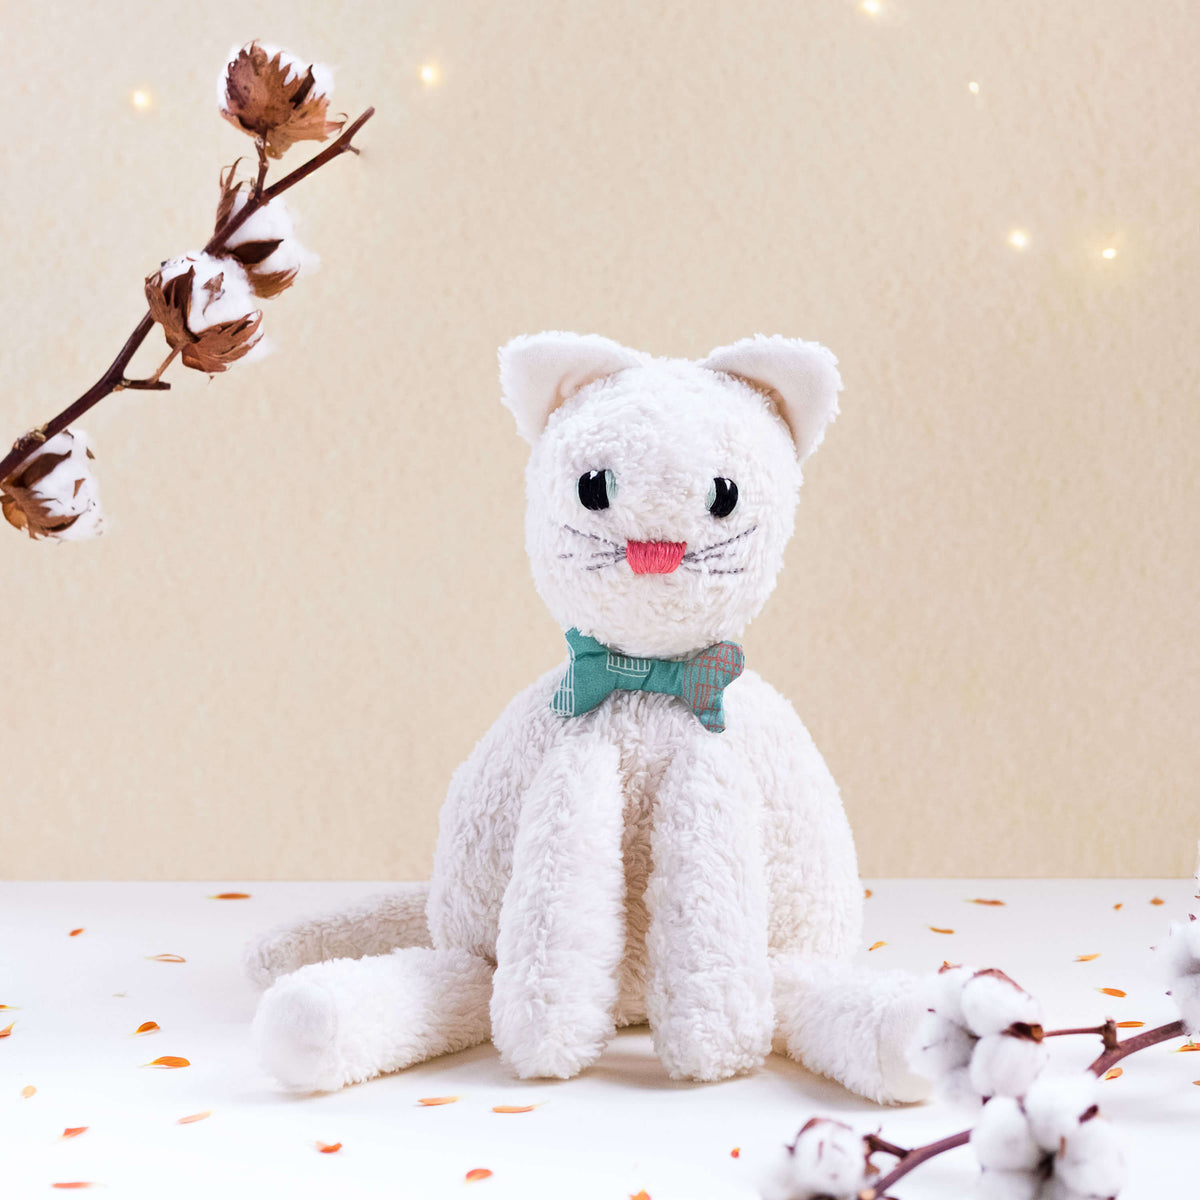 El gato Max. Muñeco de peluche hecho a mano con telas y relleno de algodón orgánico y ecológico.